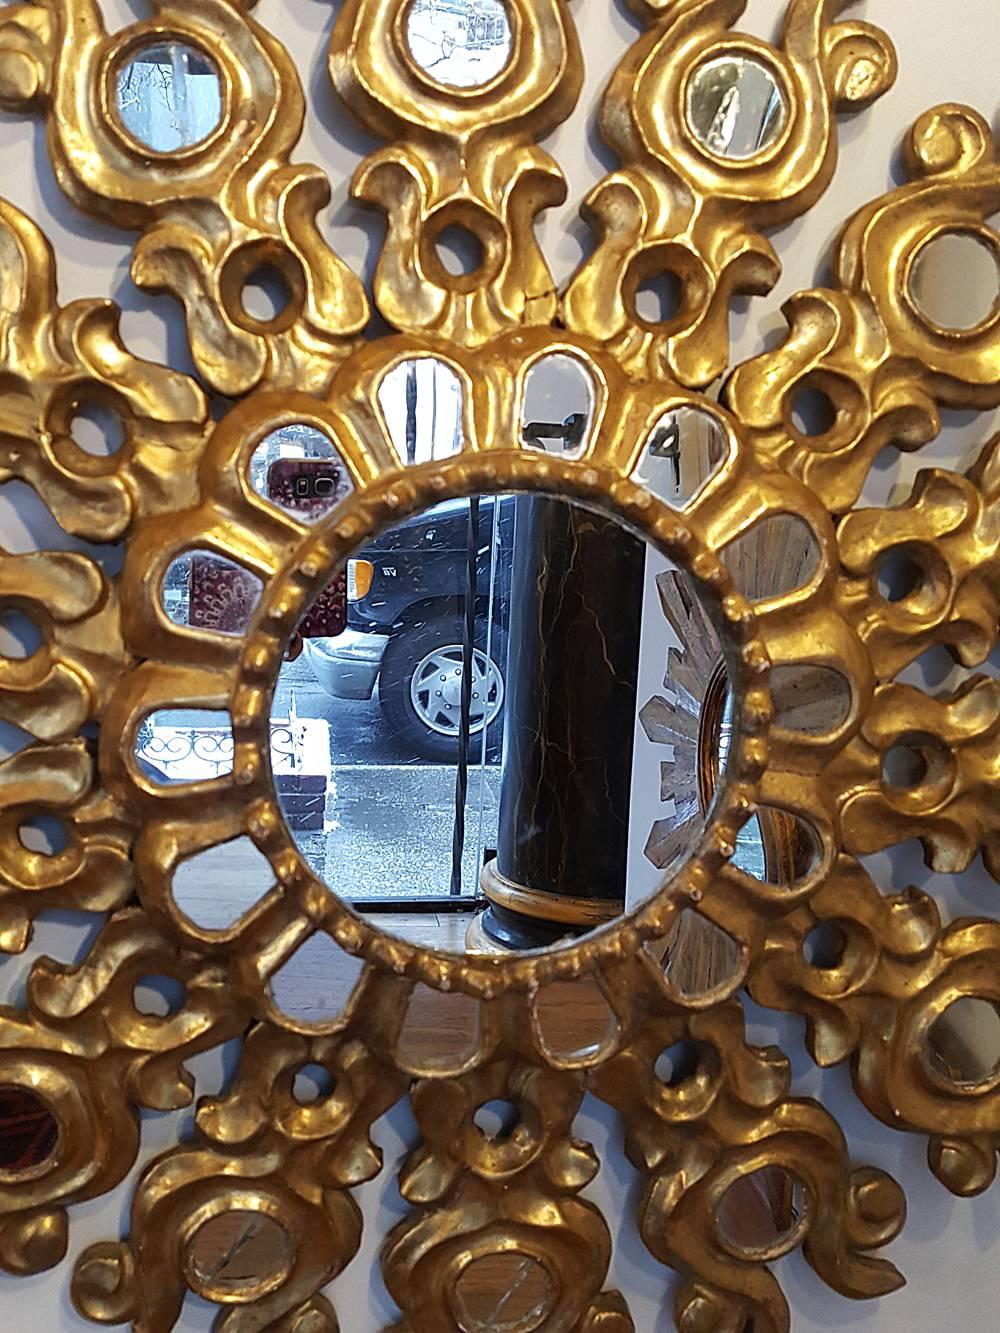 Miroir en bois sculpté et doré espagnol datant des années 1930, avec inserts en miroir.

Mesures :
Diamètre 25 cm.